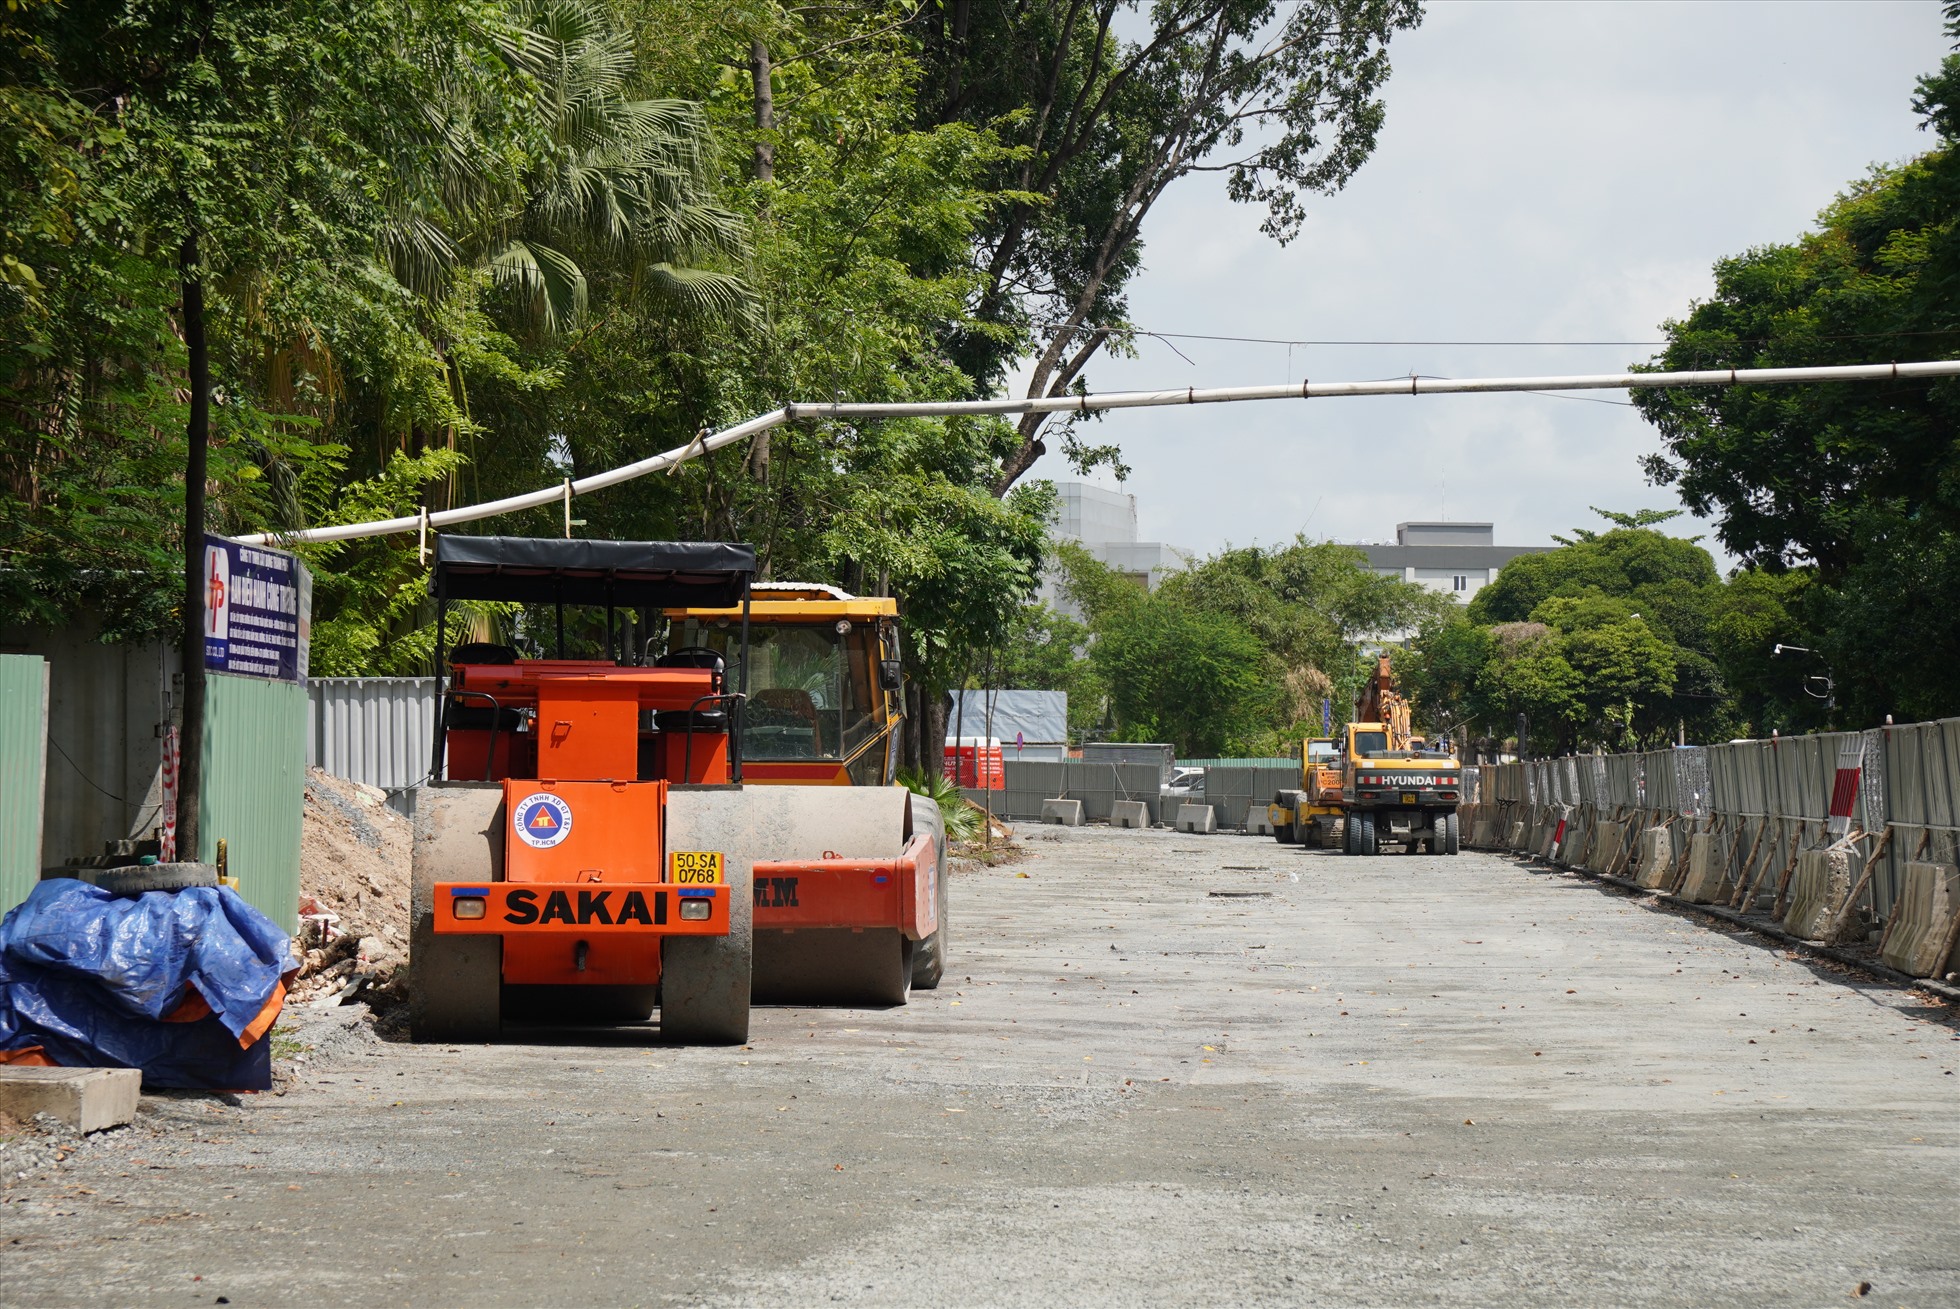 Một đoạn thuộc công viên Hoàng Văn Thụ đang được tháo dỡ để mở rộng đường. Một đoạn thuộc công viên Hoàng Văn Thụ đang được tháo dỡ để mở rộng đường. Một đoạn thuộc công viên Hoàng Văn Thụ đang được tháo dỡ để mở rộng đường,  máy móc, phương tiện được huy động đến công trường phục vụ dự án.